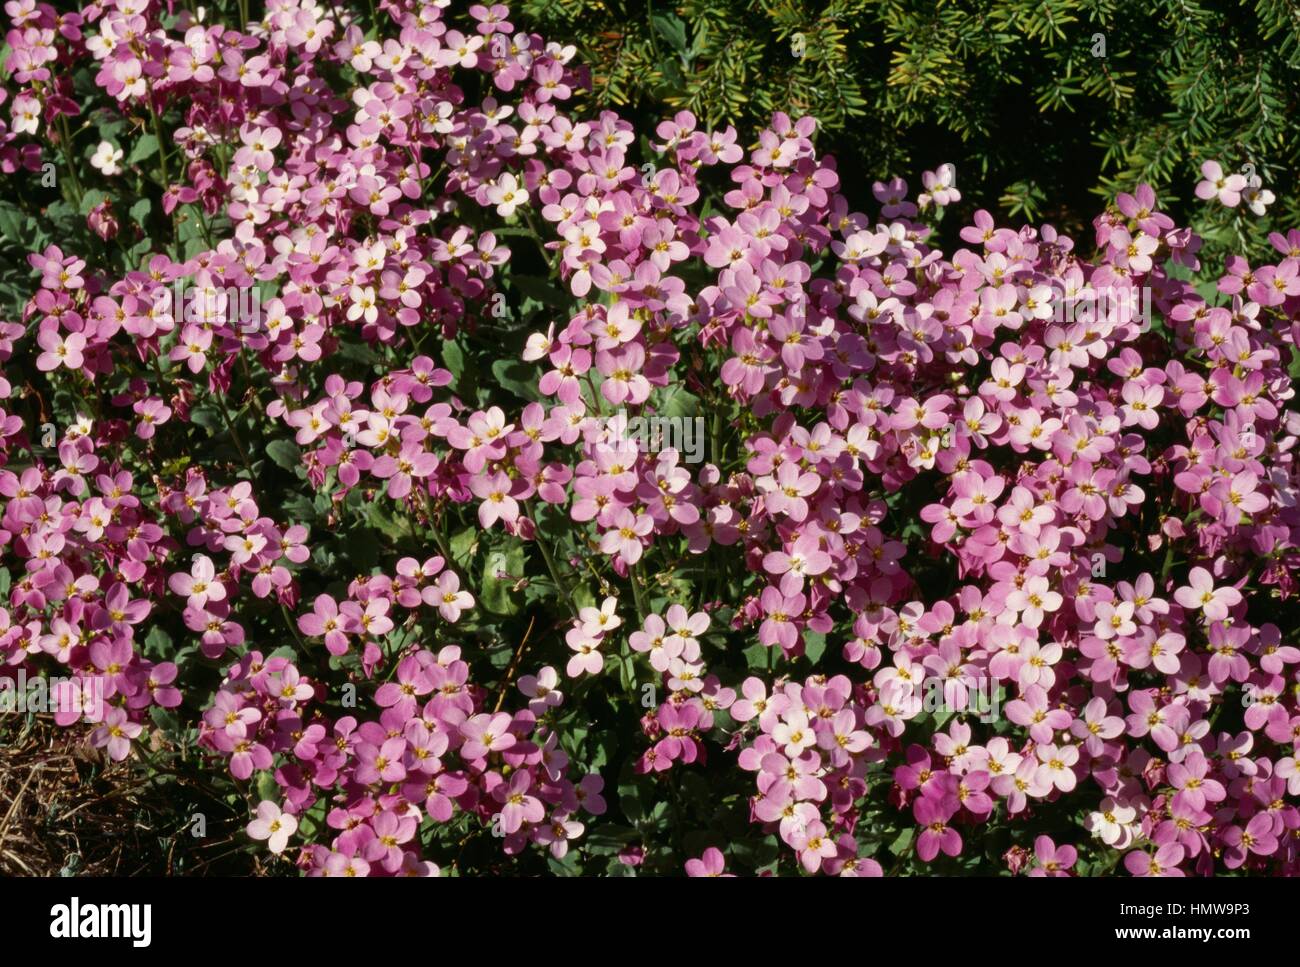 Snowcap Arabis or Alpine rock-cress (Arabis alpina), Brassicaceae. Stock Photo